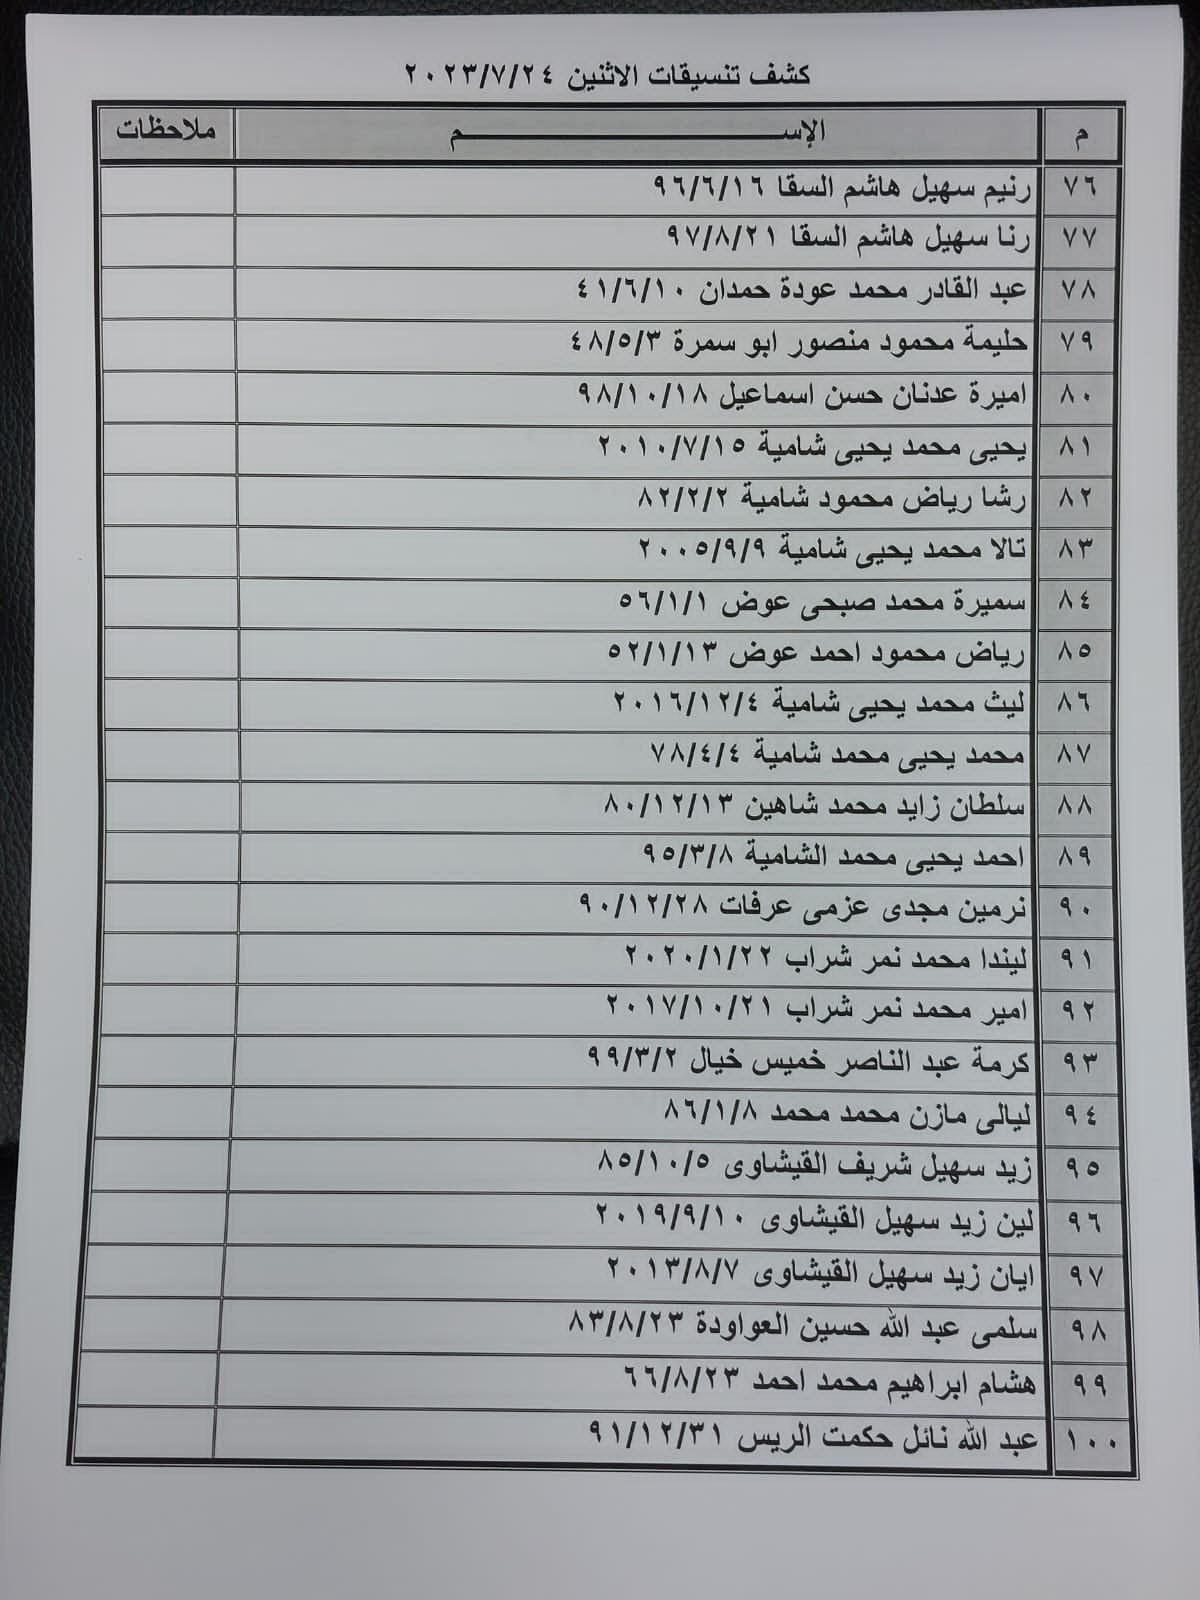 بالأسماء: كشف "تنسيقات مصرية" للسفر عبر معبر رفح الإثنين 24 يوليو 2023